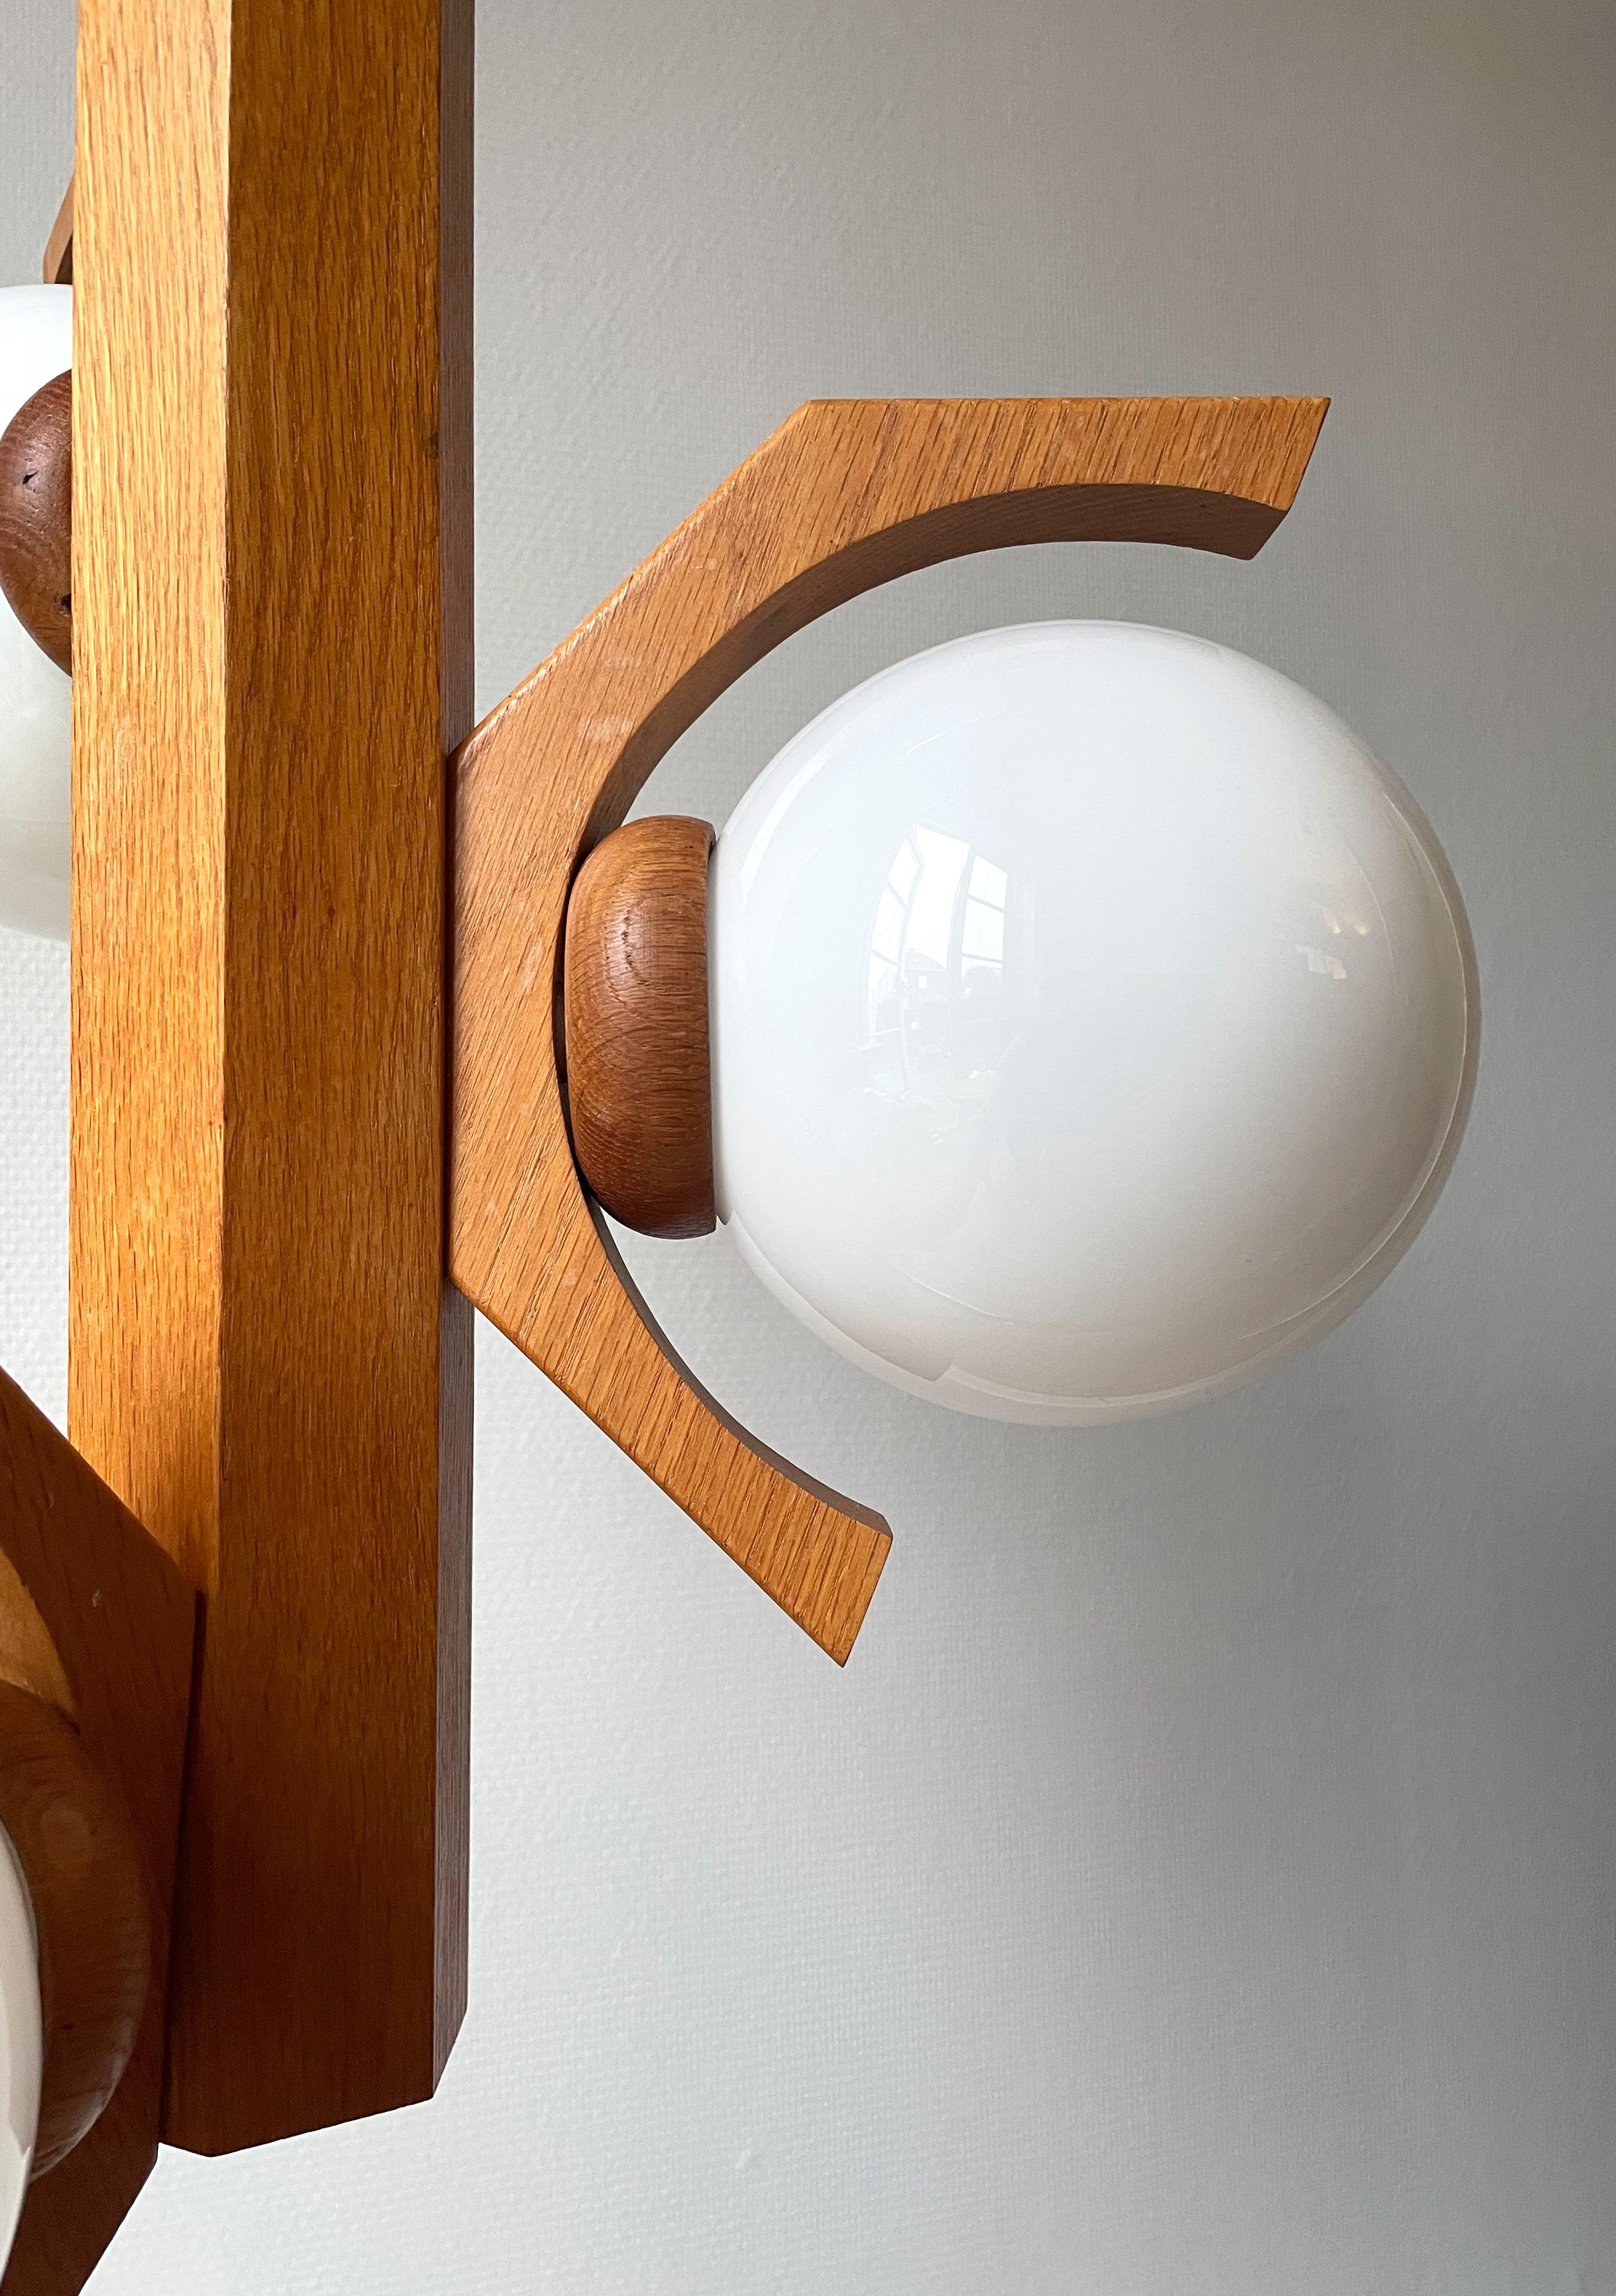 20th Century Modernist Dutch Wooden Three Globe Chandelier by Bony Design, 1970s